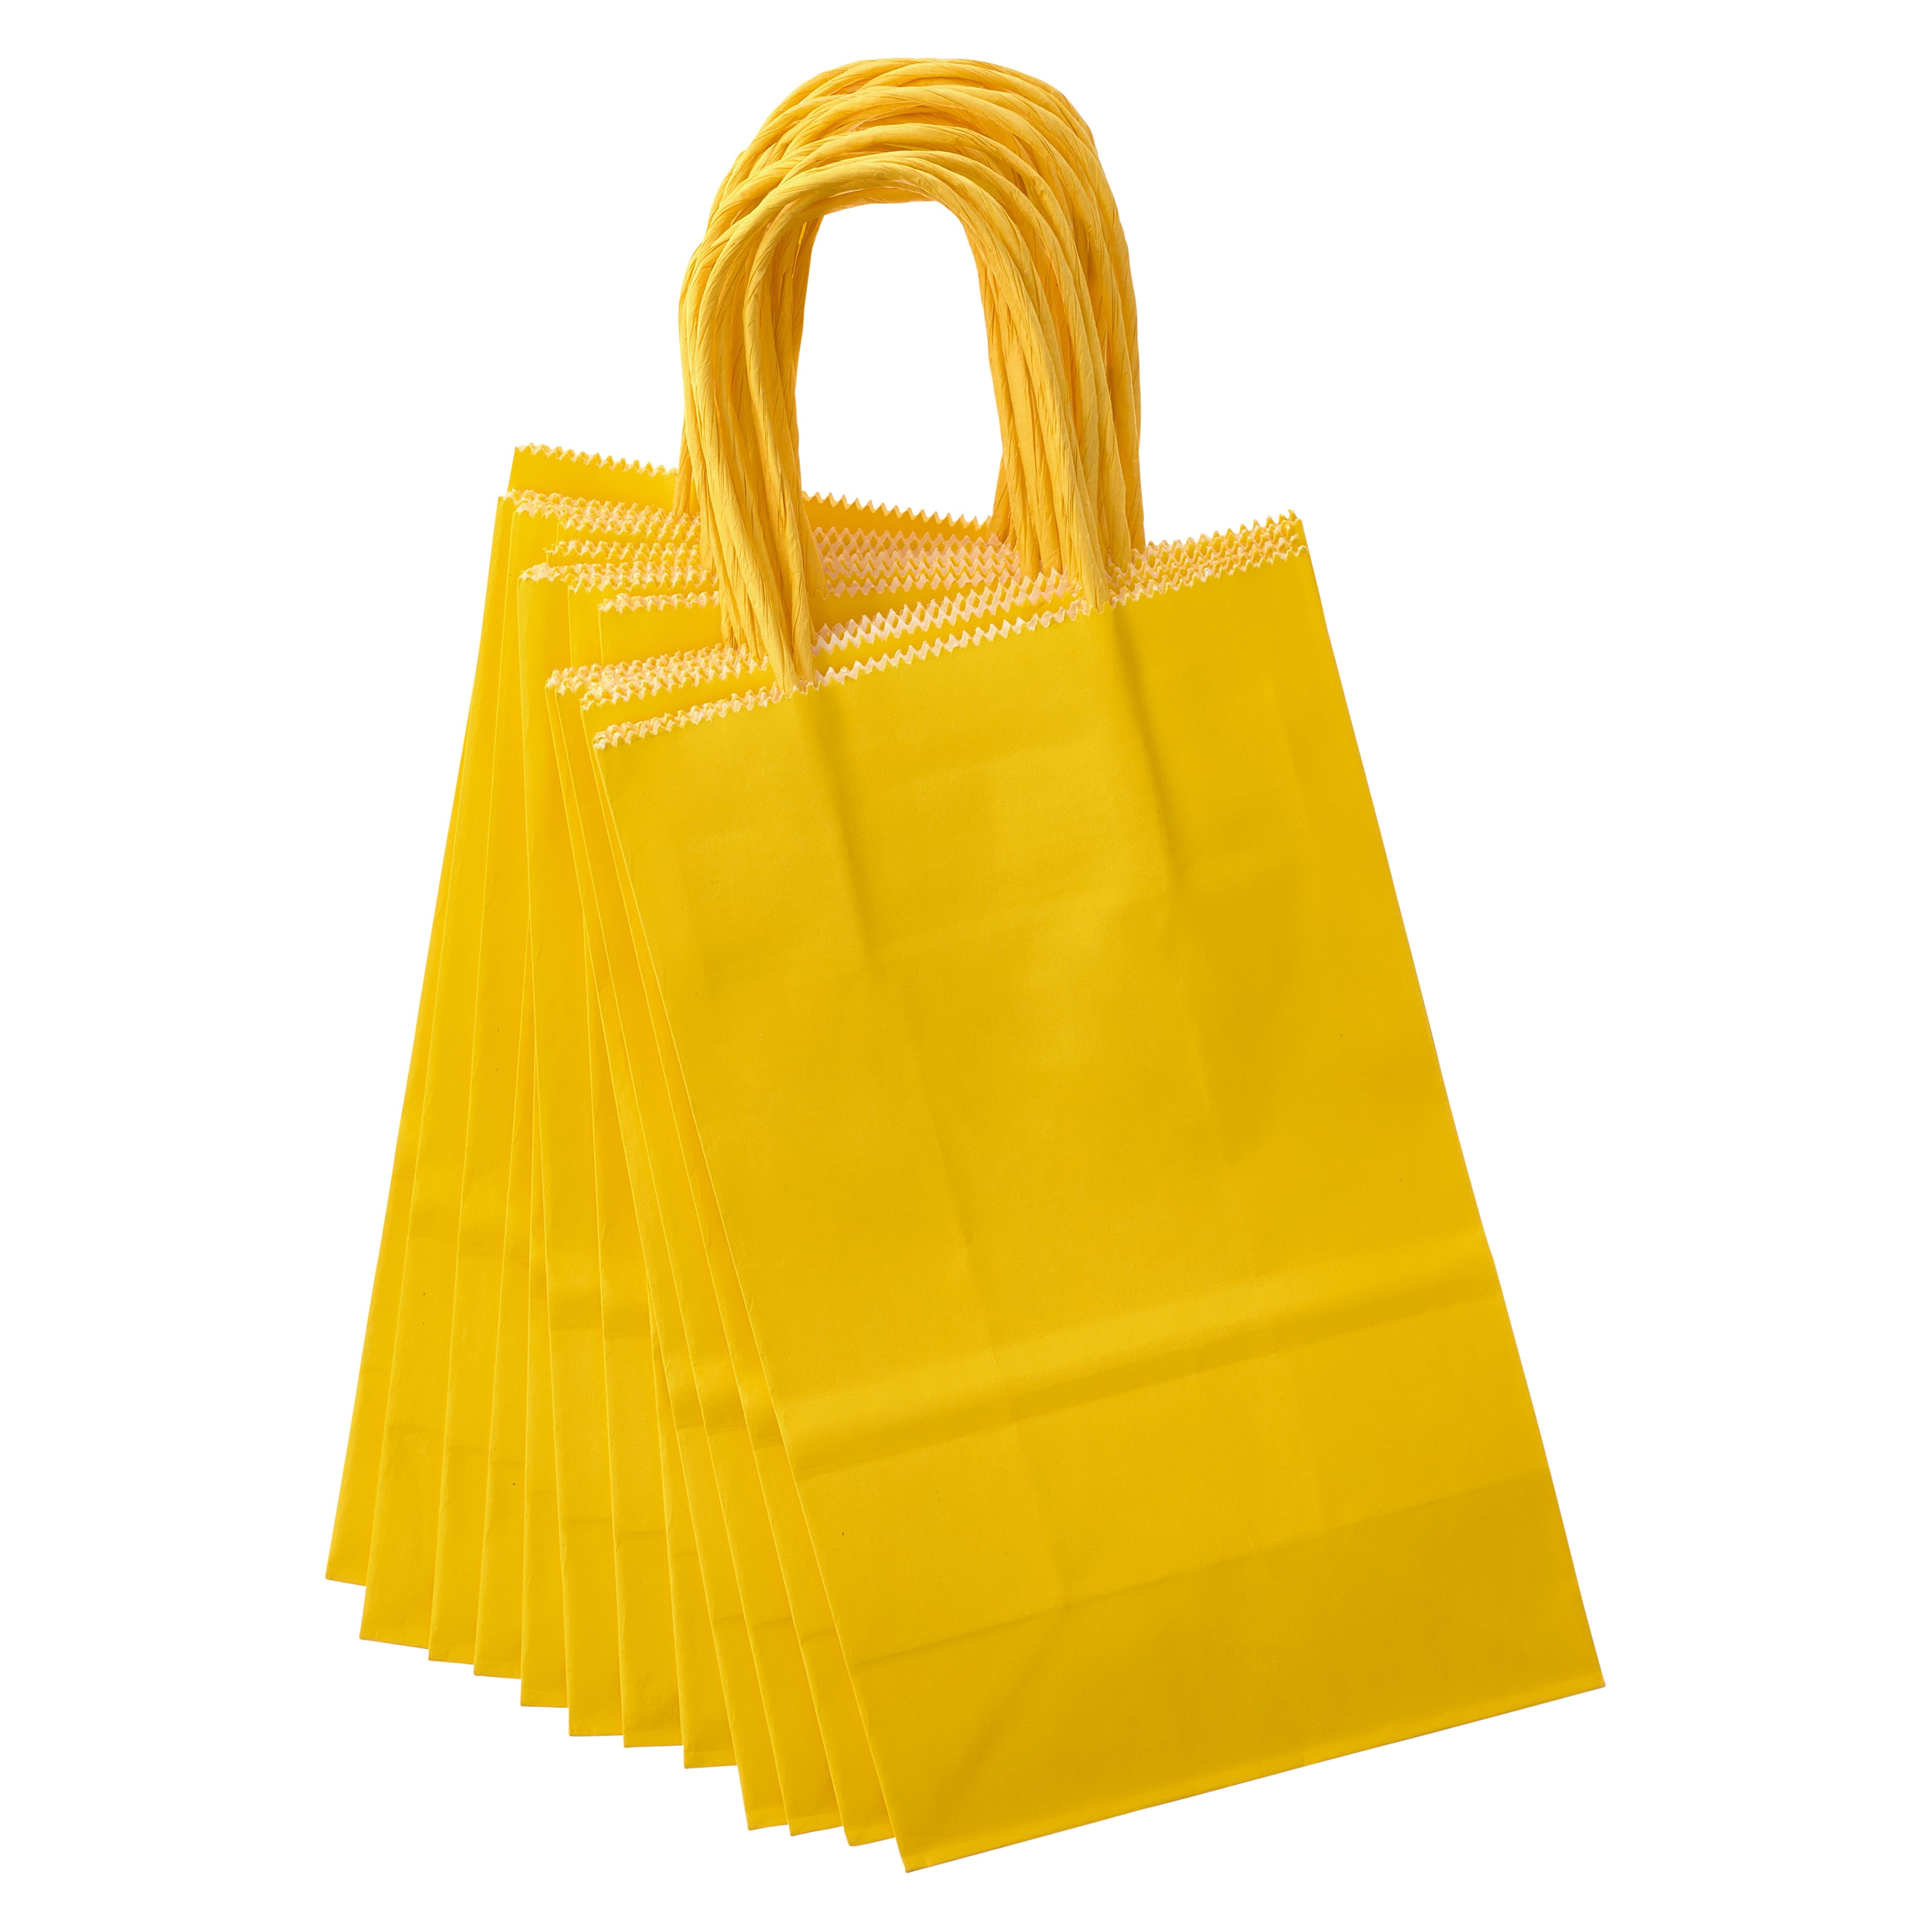 Mustard Yellow Shredded Paper Gift Bag Filler - Teals Prairie & Co.®